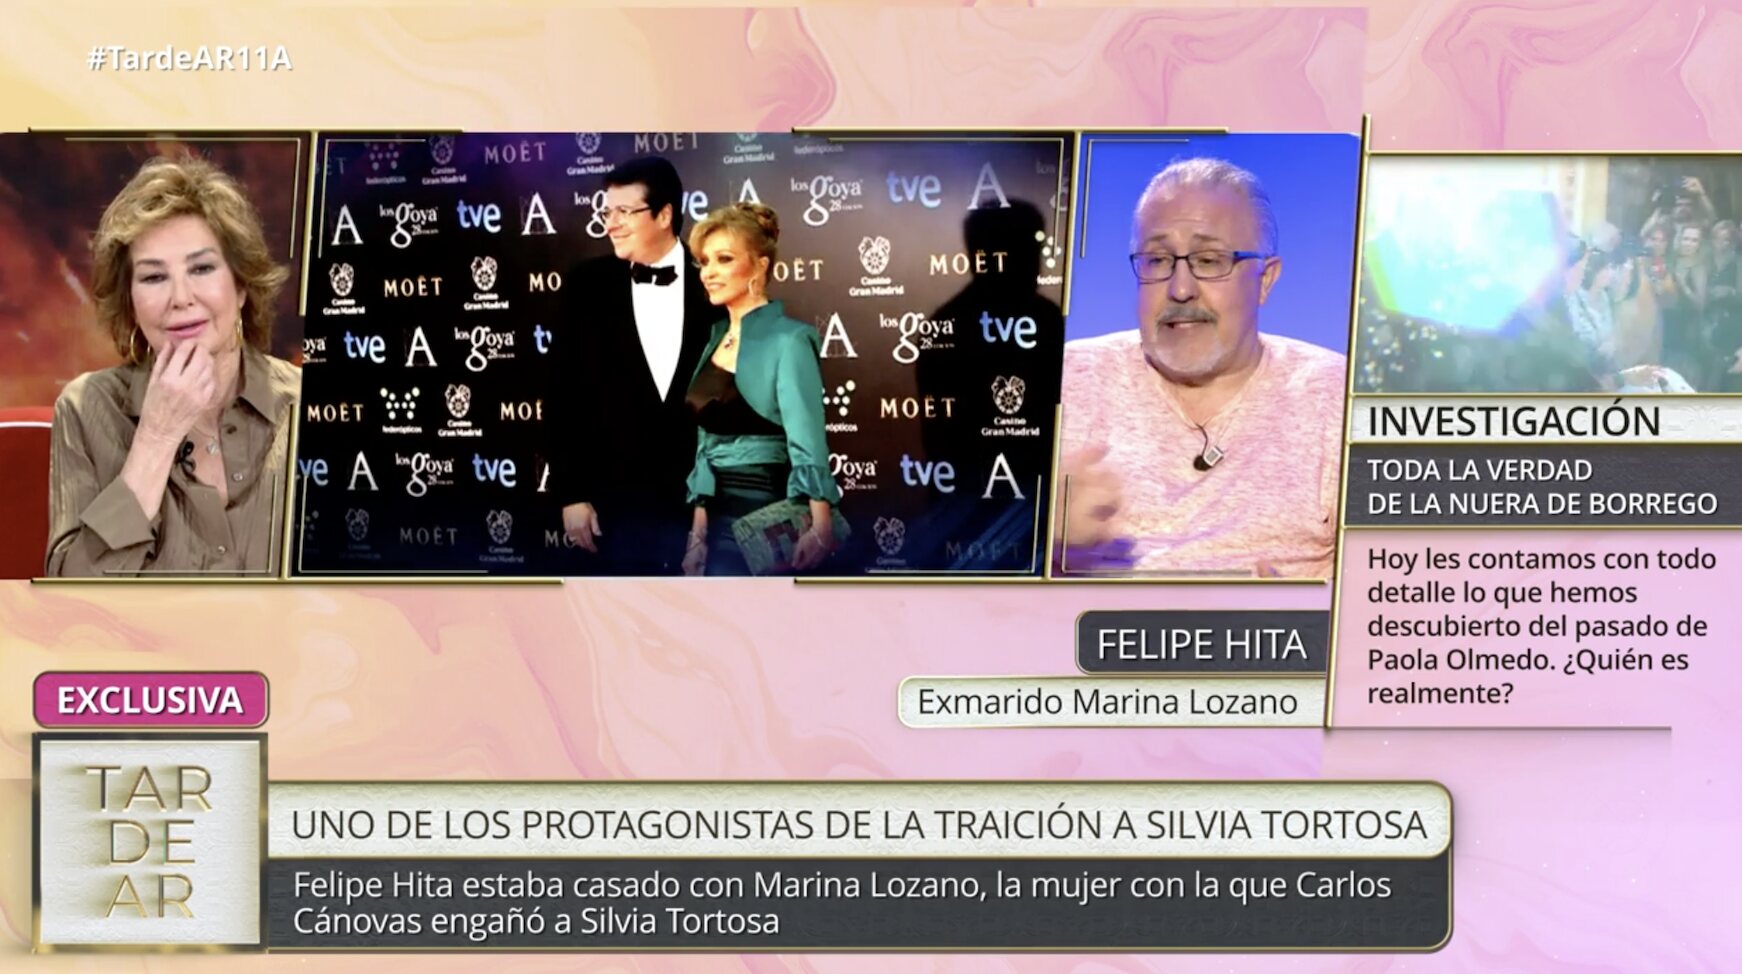 Felipe Hita, exmarido de Marina Lozano, habla para 'TardeAR'/ Foto: telecinco.es